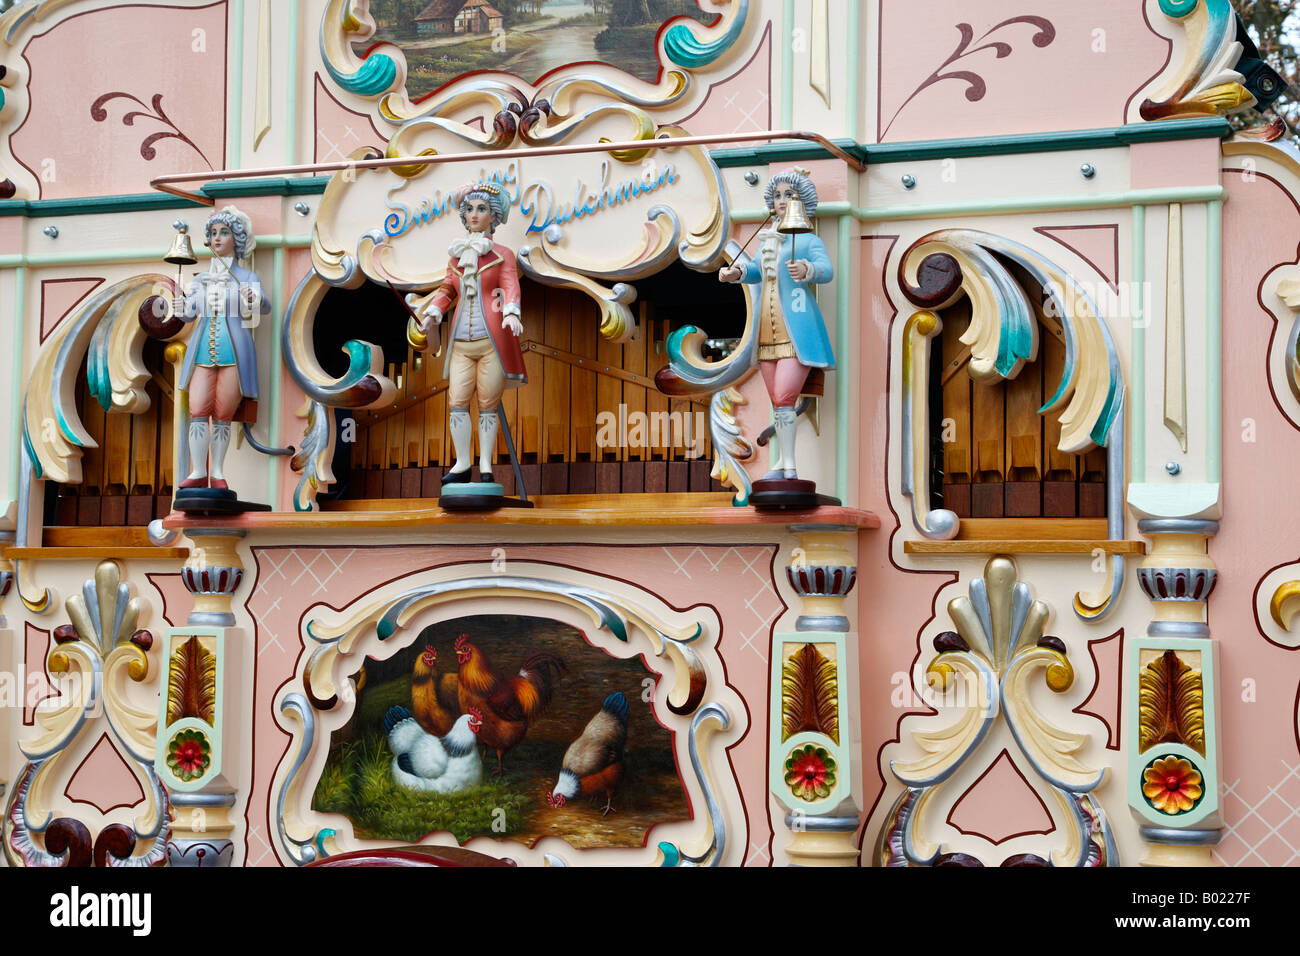 Détail d'un parc d'orgue à keukenhof lisse Pays-Bas Hollande du Nord Europe Banque D'Images